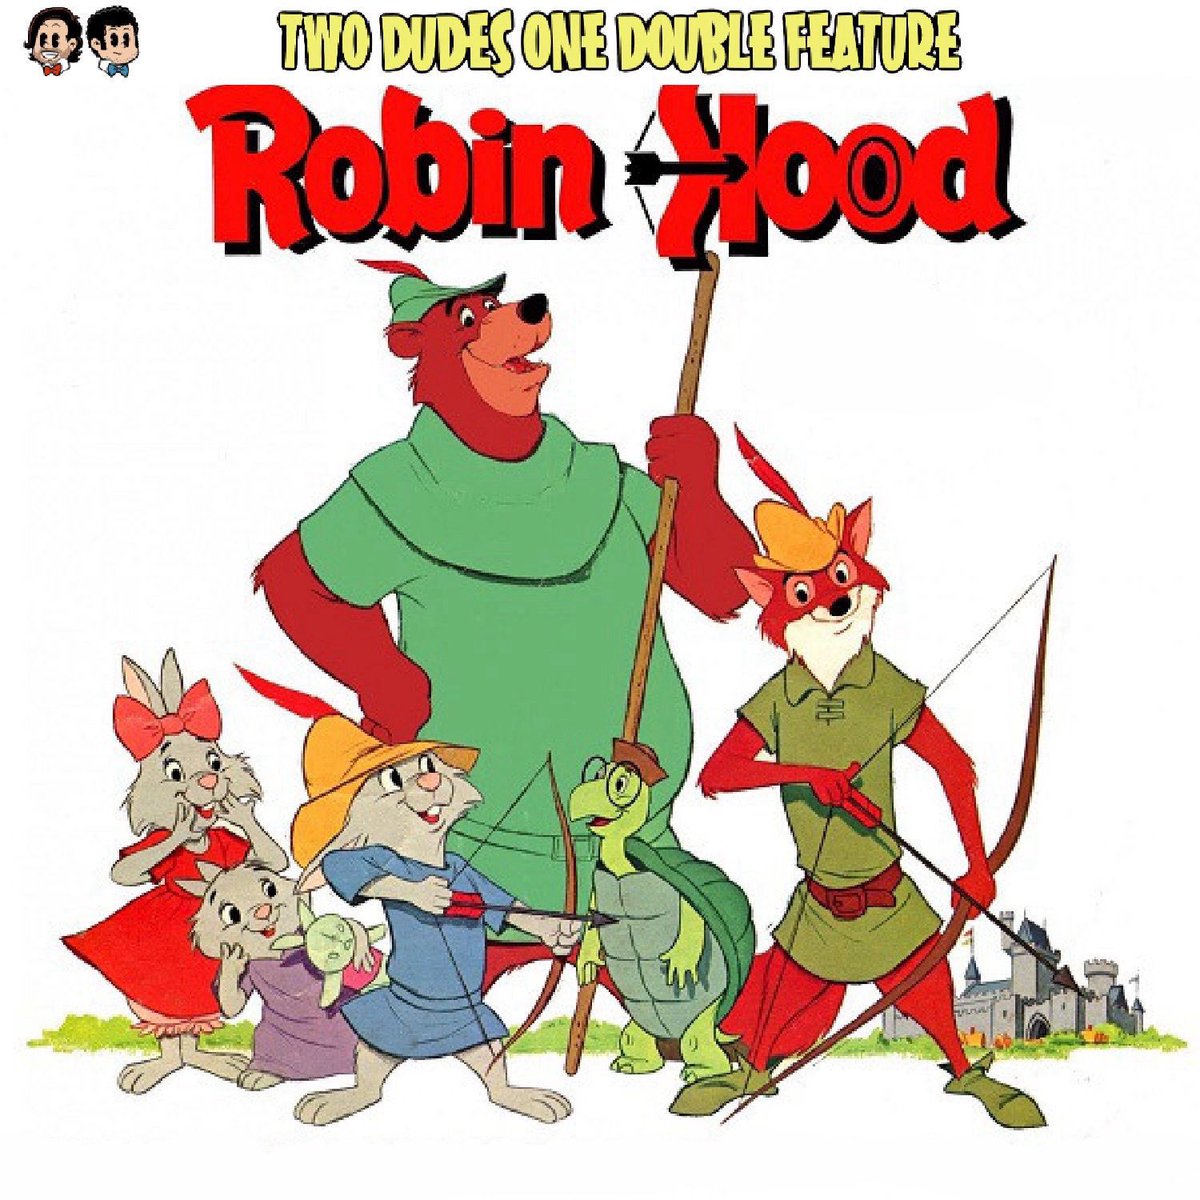 Our special presentation on Disney’s Robin Hood is here!! LINKS: linktr.ee/TwoDudesOneDou… #robinhood #disney #disneyanimation #oodelally #littlejohn #podcast #moviepodcast #twodudesonedoublefeature #specialpresentation